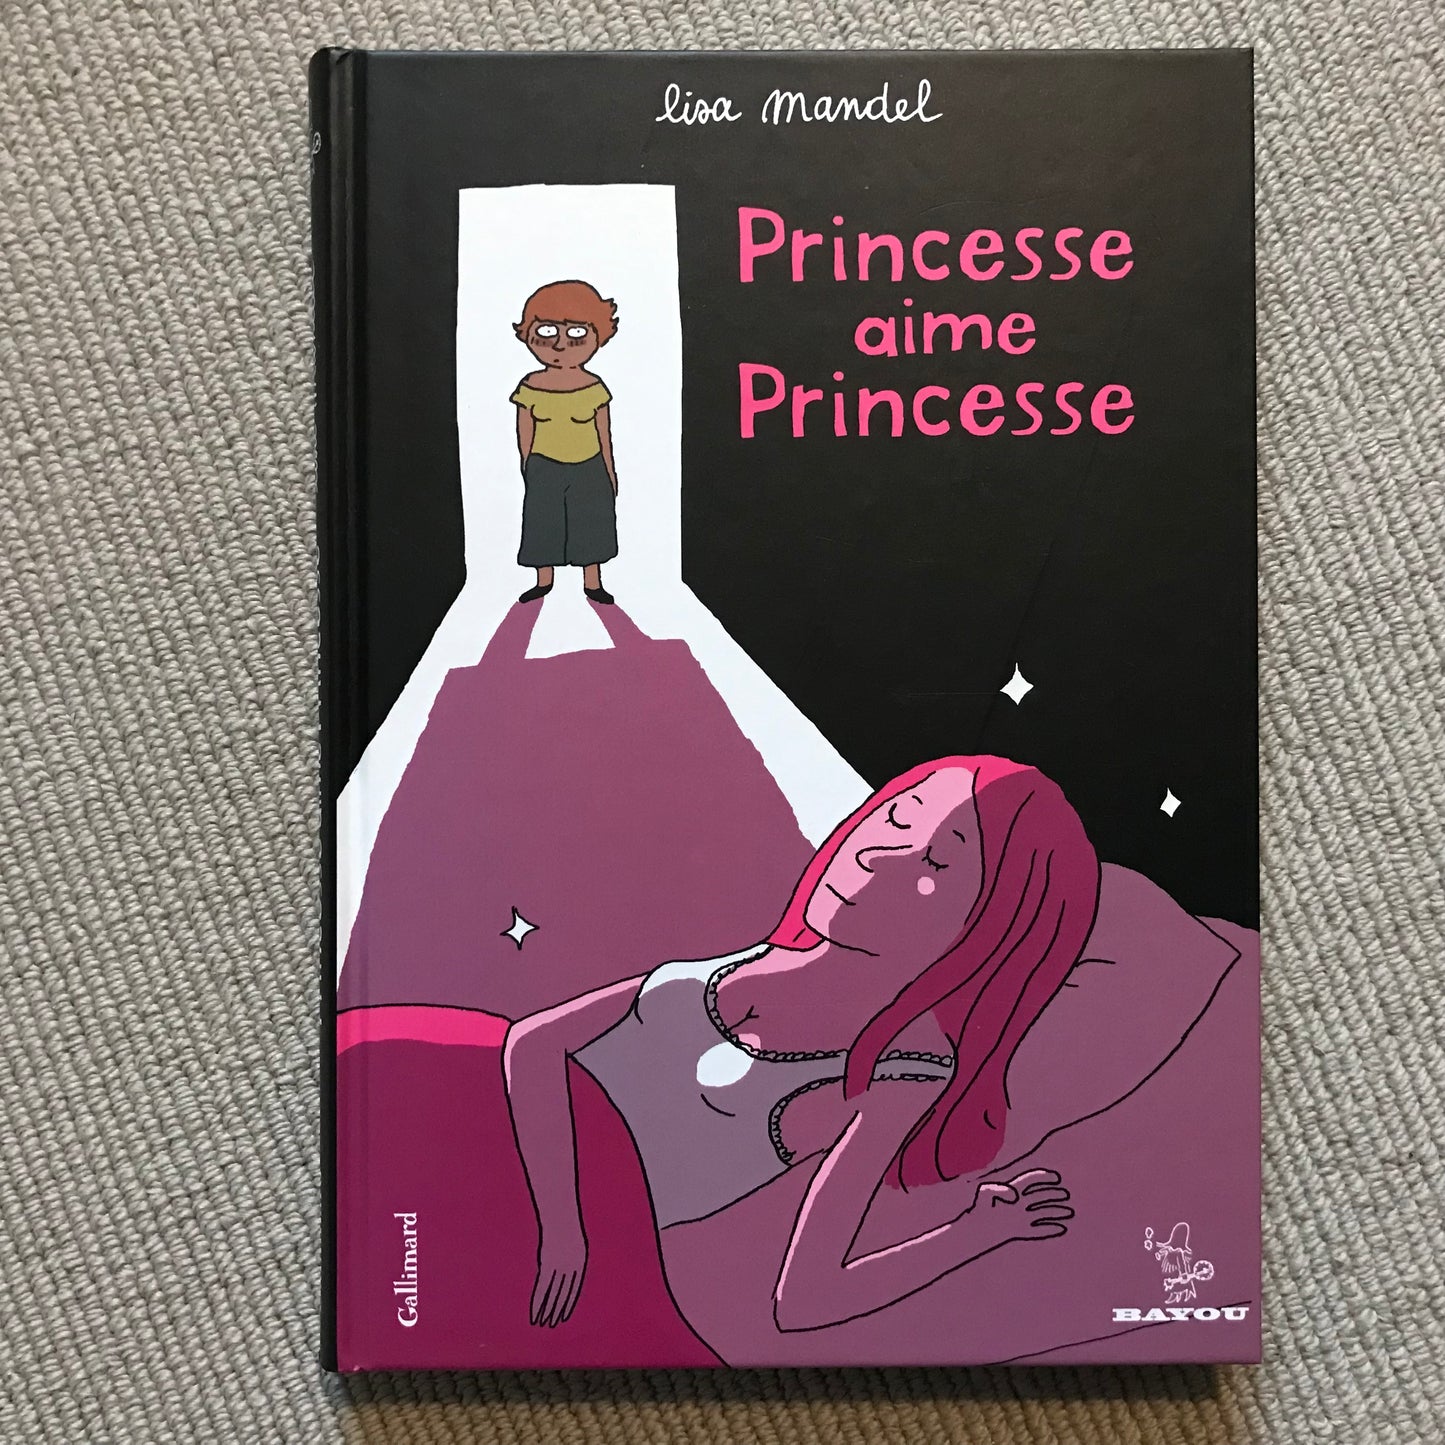 Mandel, Lisa - Princesse aime Princesse